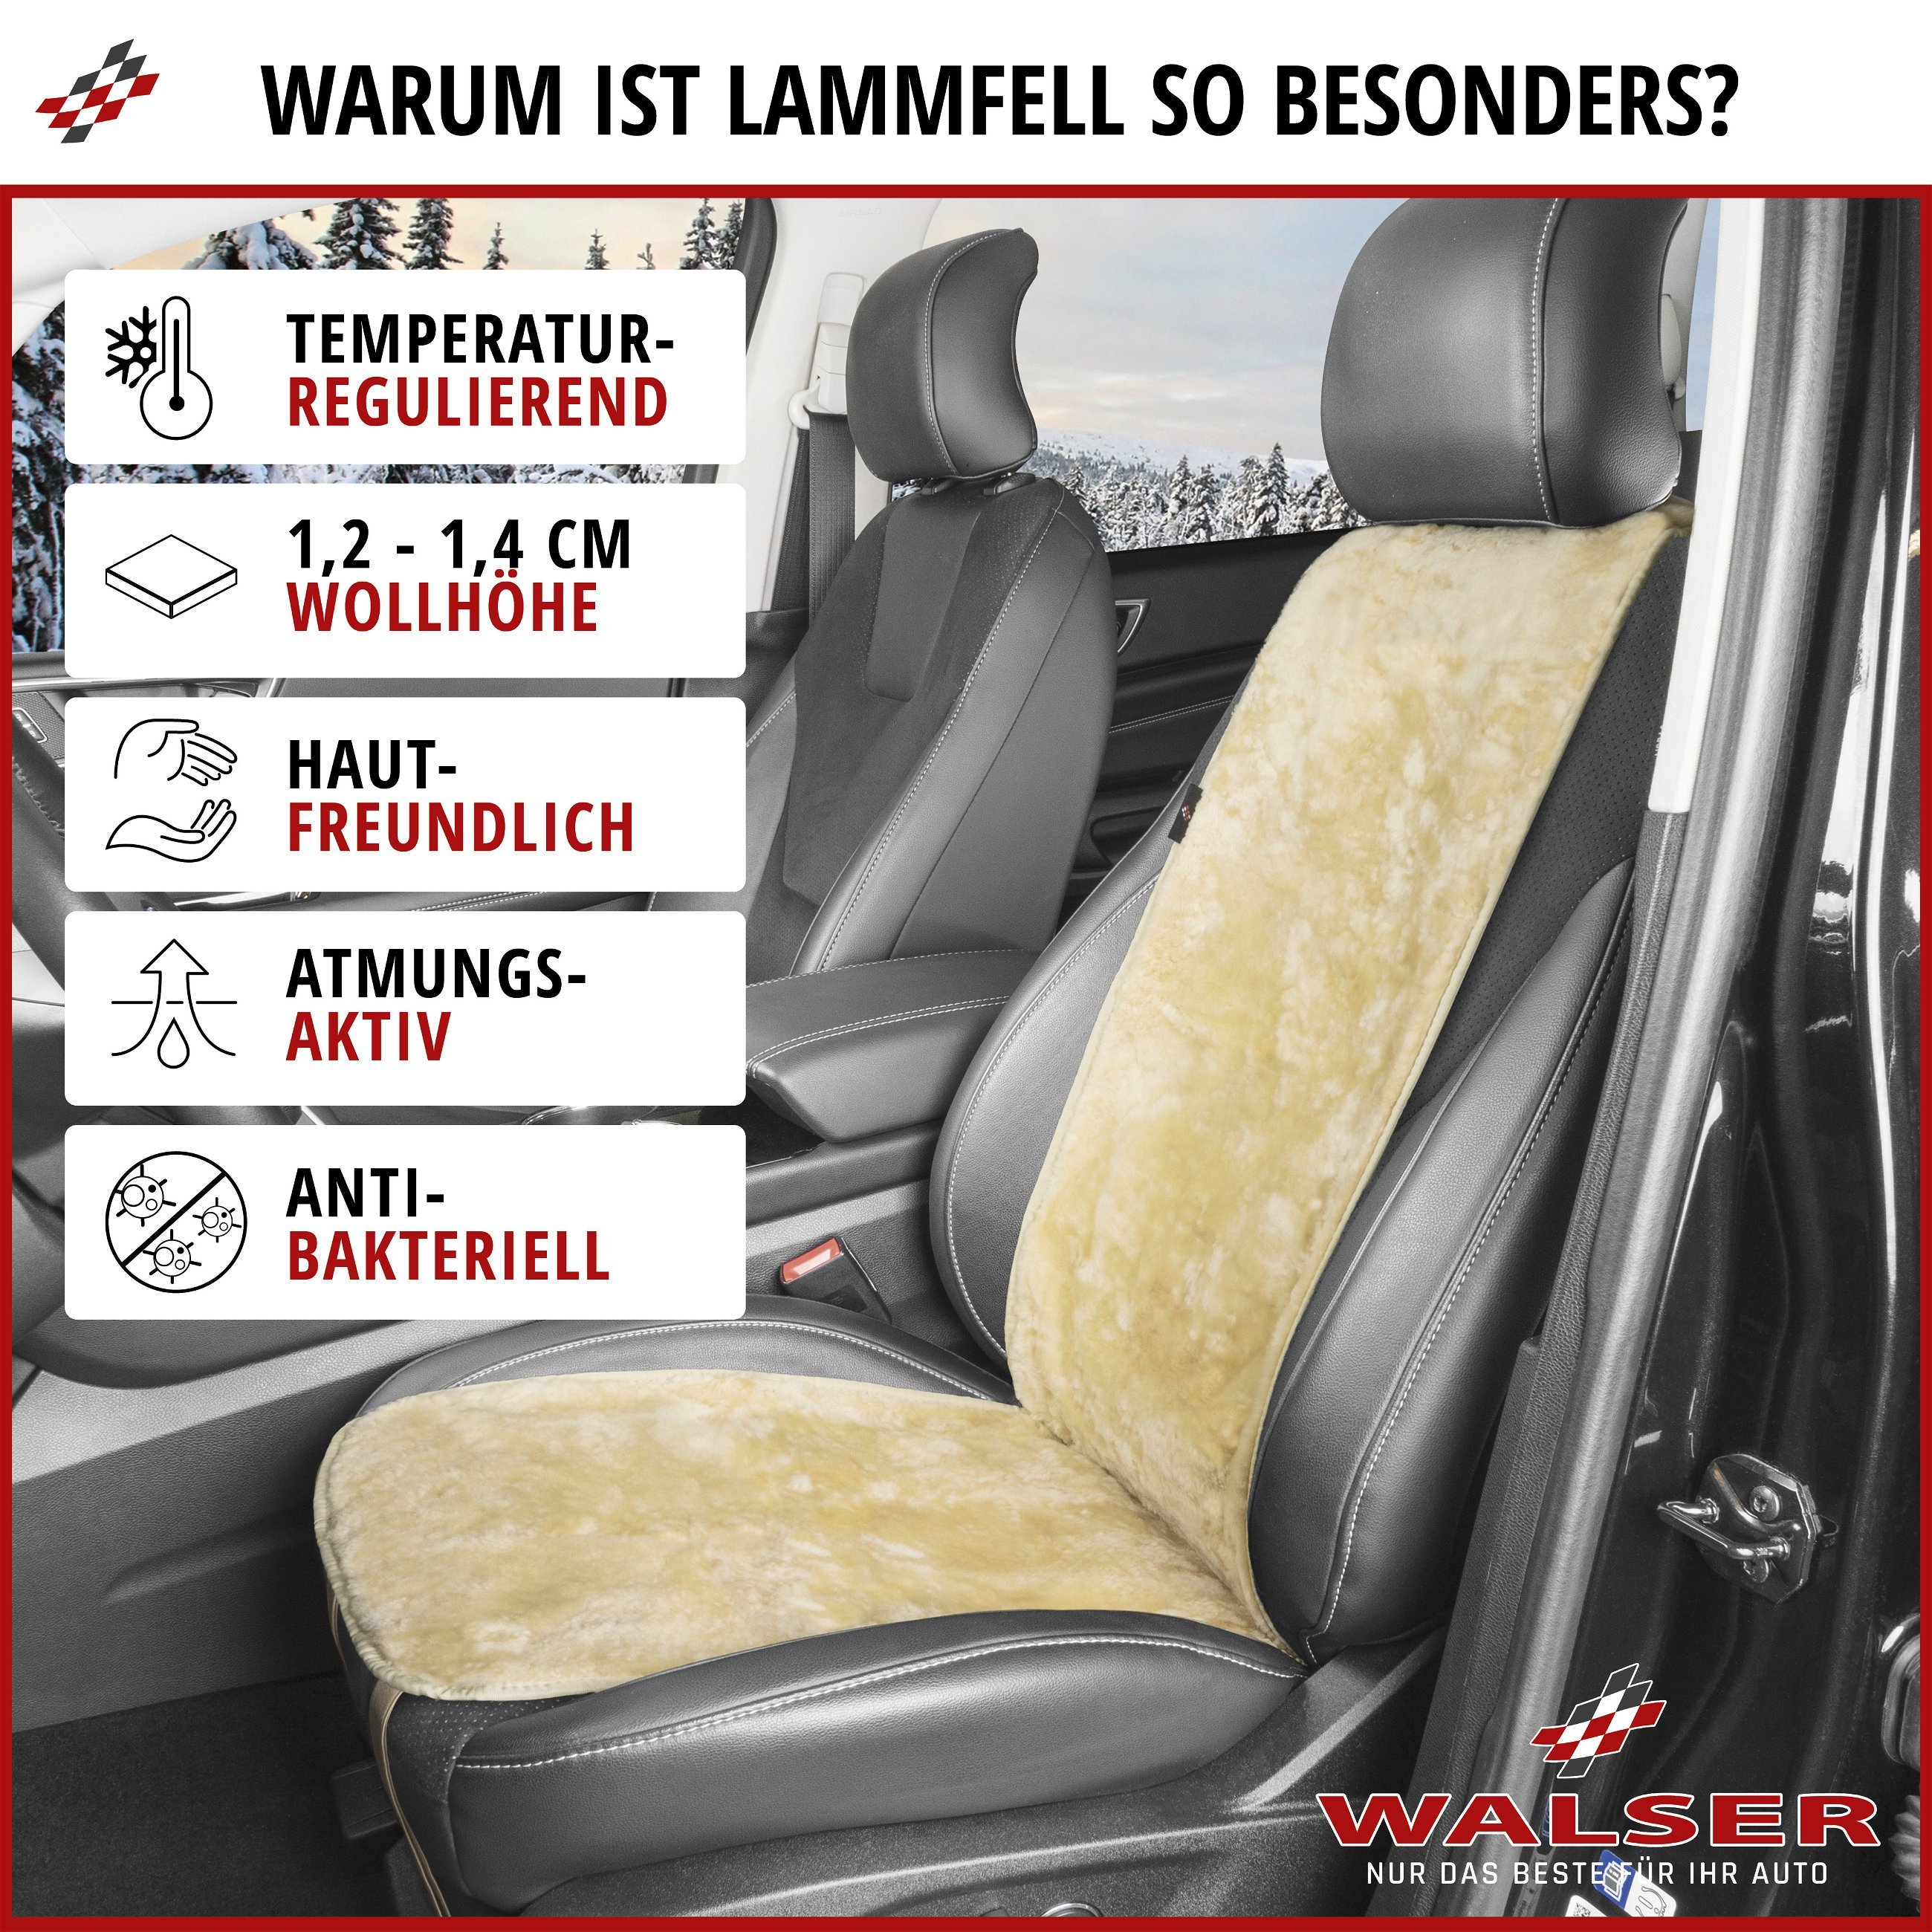 PKW Sitzauflage aus Lammfell Cosmo, Auto-Sitzaufleger, Lammfell-Sitzauflage  beige, PKW Sitzauflage aus Lammfell Cosmo, Auto-Sitzaufleger, Lammfell-Sitzauflage  beige, Sitzauflagen, Sitzbezüge und Sitzauflagen für PKWs